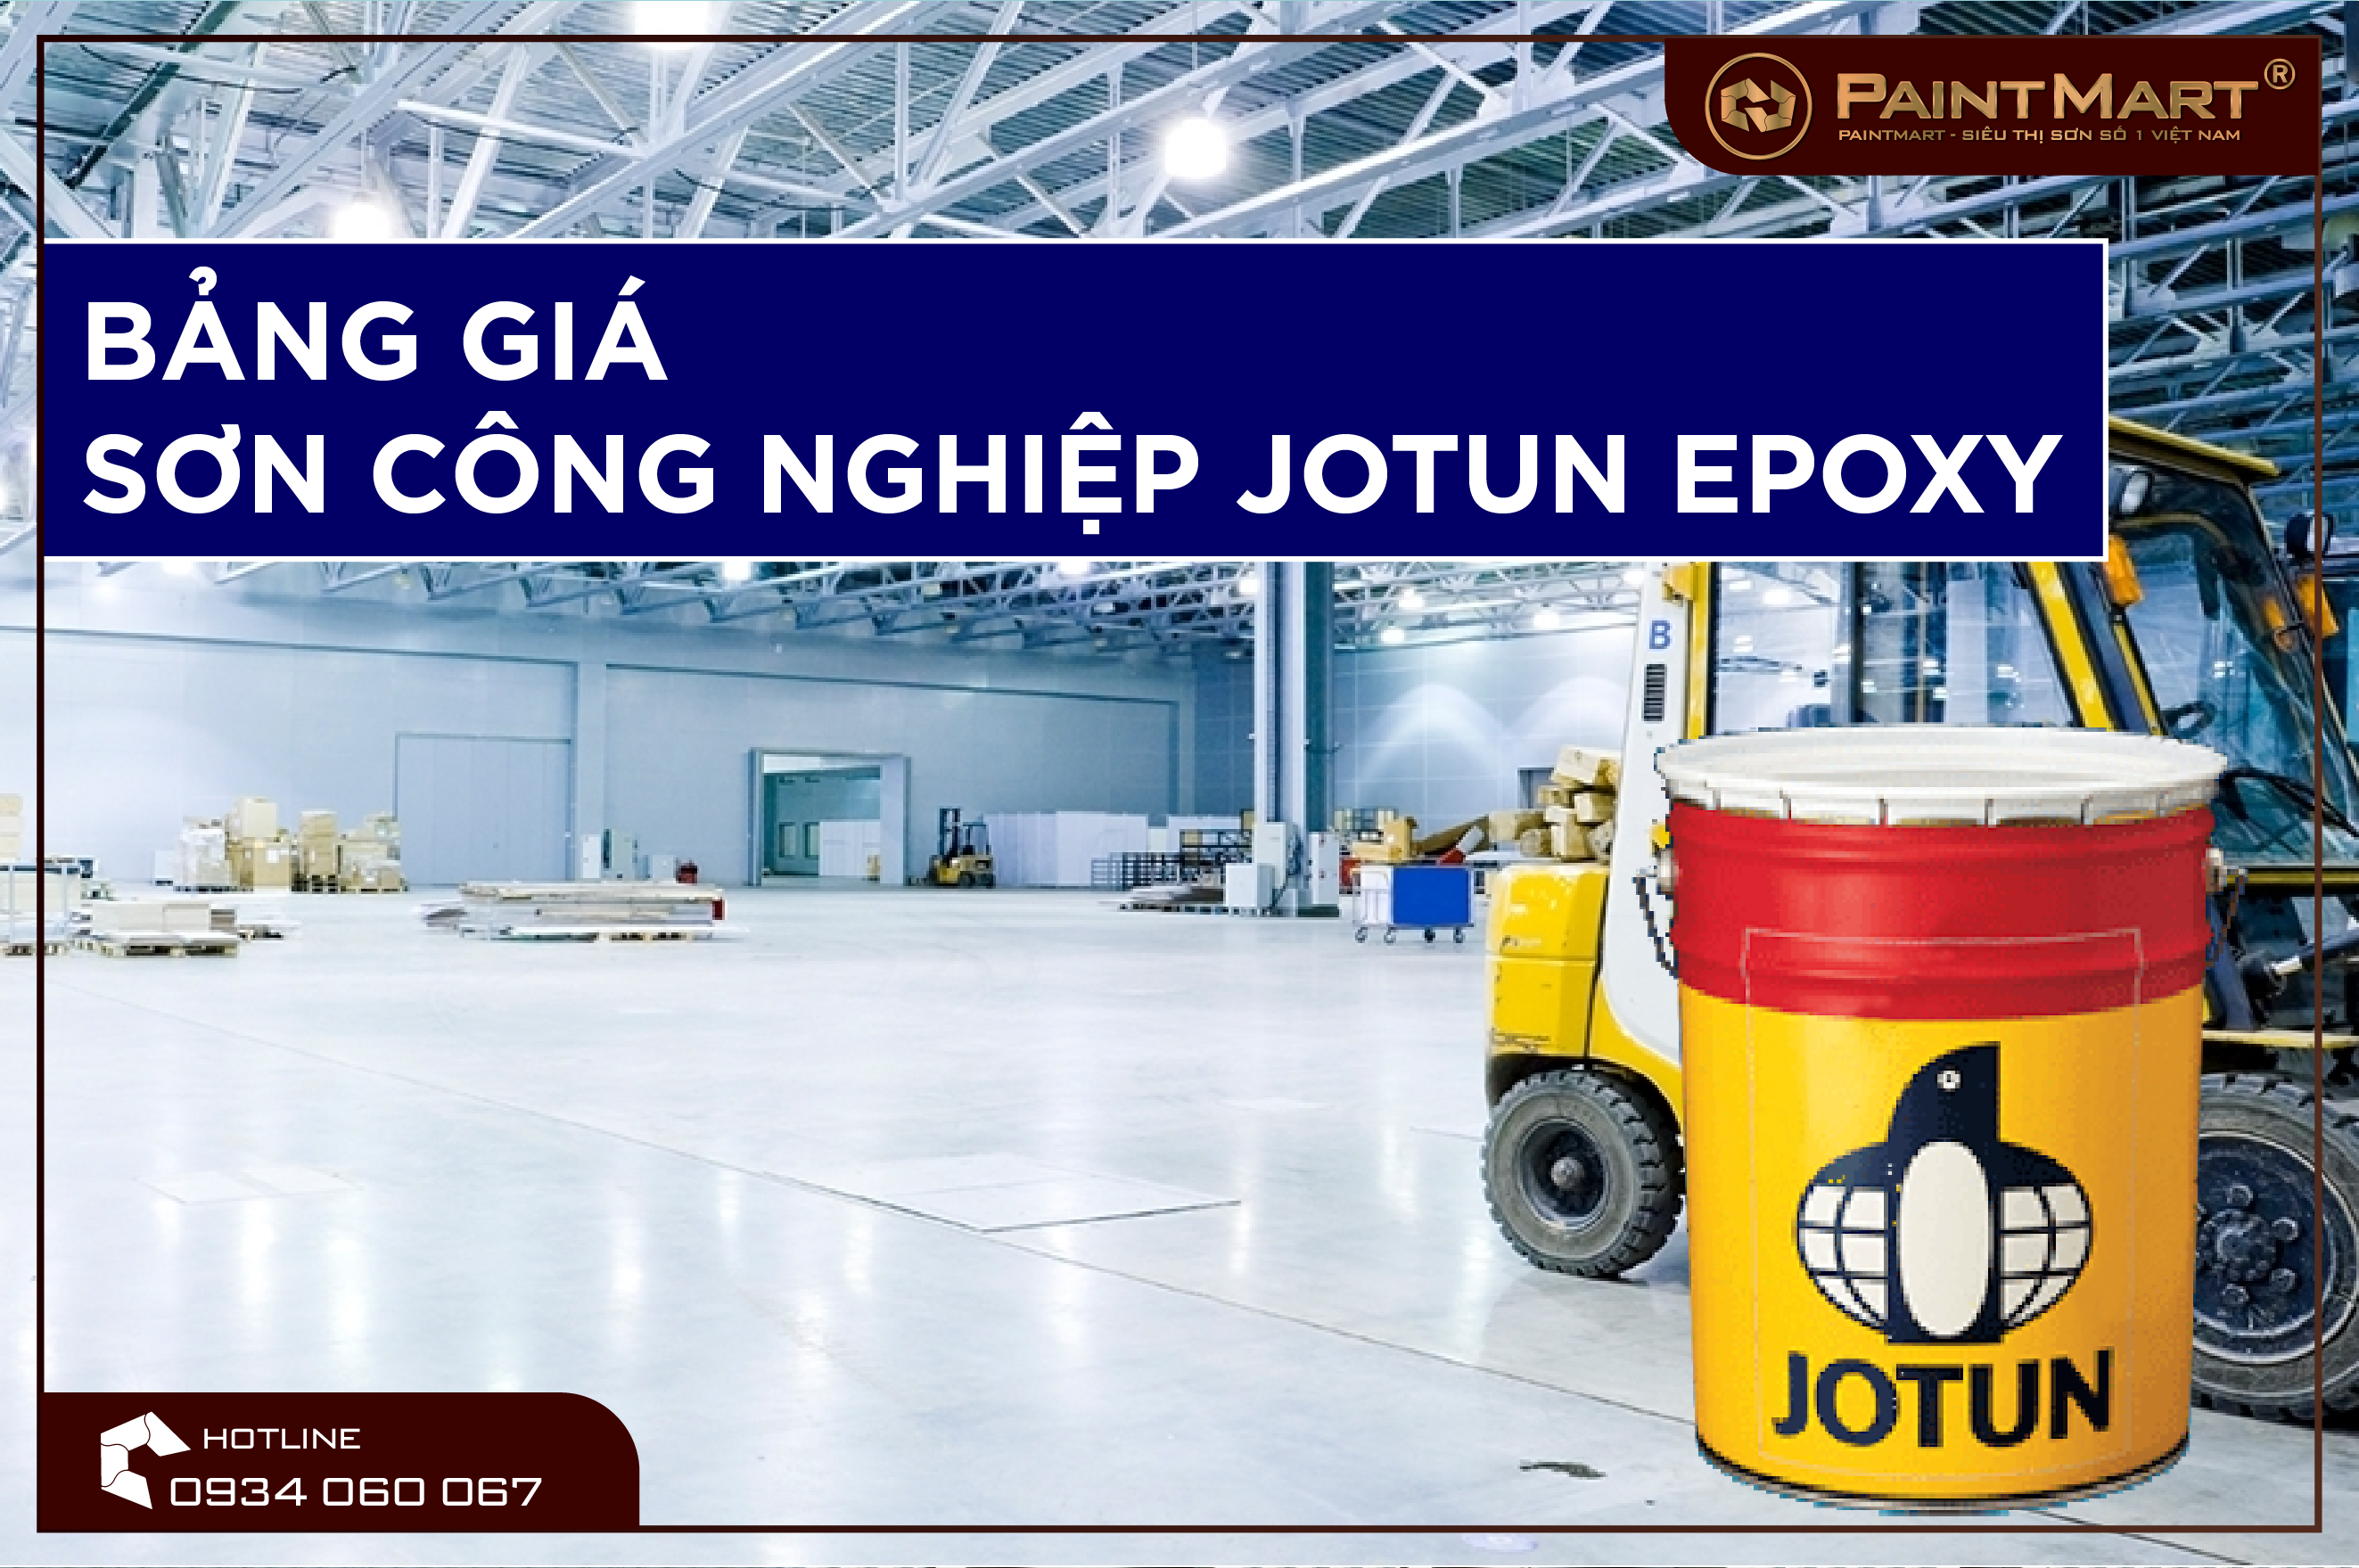 Báo giá sơn công nghiệp Jotun Epoxy giúp bạn có cái nhìn tổng quan về chi phí sơn cho công trình của mình. Hãy xem hình ảnh liên quan để tìm hiểu thêm về báo giá và sản phẩm sơn công nghiệp Jotun Epoxy.